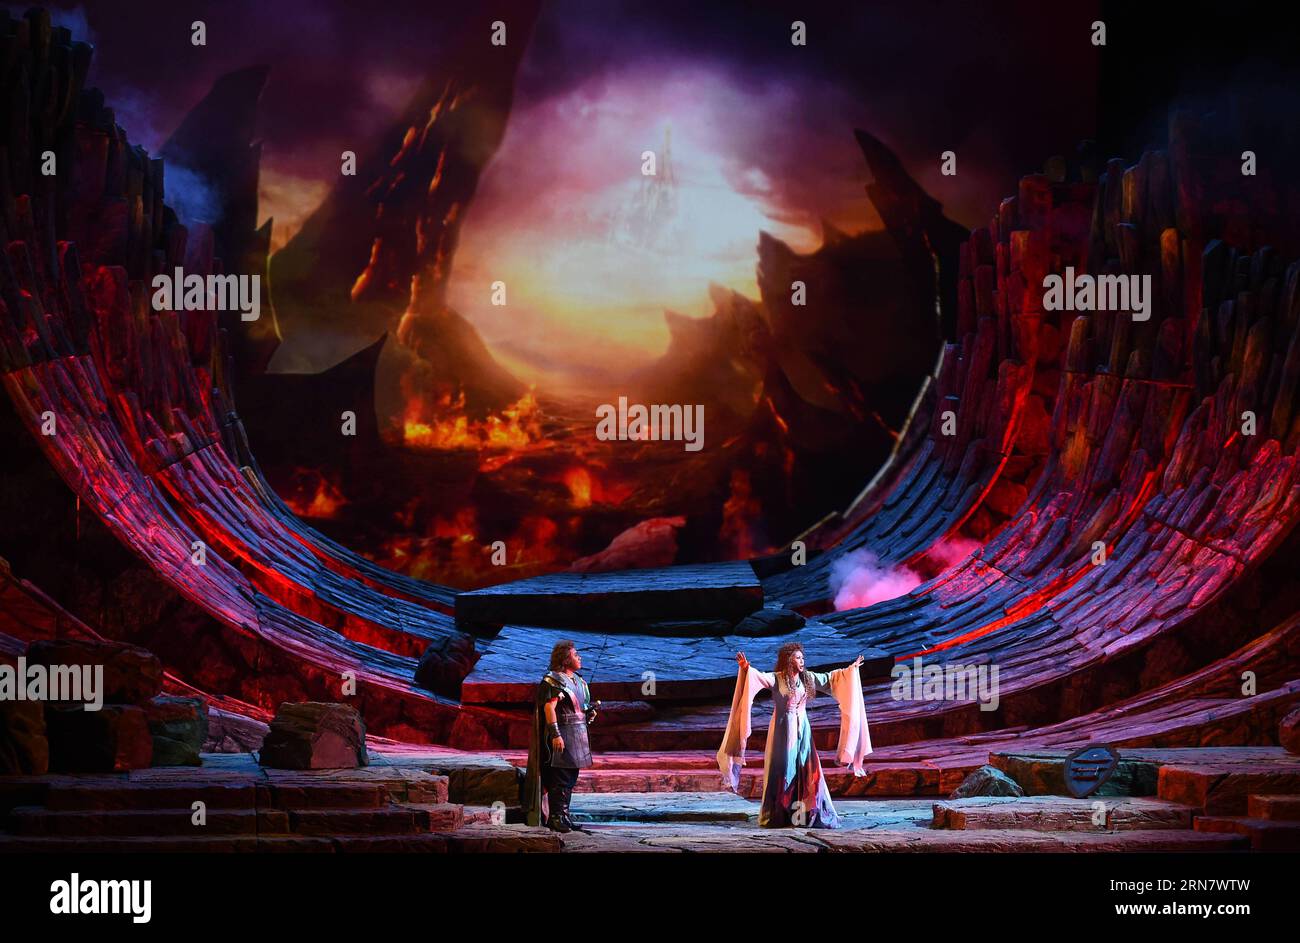 Des acteurs de l Opéra national de Chine jouent dans l opéra Twilight of the Gods , le dernier du cycle de quatre opéras de Richard Wagner intitulé The Ring of the Nibelung , au Centre national des arts de la scène à Beijing, capitale de la Chine, le 22 septembre 2015. (wf) CHINA-BEIJING-OPERA-TWILIGHT OF THE GODS (CN) JinxLiangkuai PUBLICATIONxNOTxINxCHN les acteurs de l'Opéra National de Chine jouent dans l'Opéra Twilight of the Gods The Load dans Richard Wagner S cycle de quatre opéras intitulé The Ring of the Nibelung AU Centre national pour l'art de la scène dans la capitale de Pékin Chine sept. 22 2015 Banque D'Images